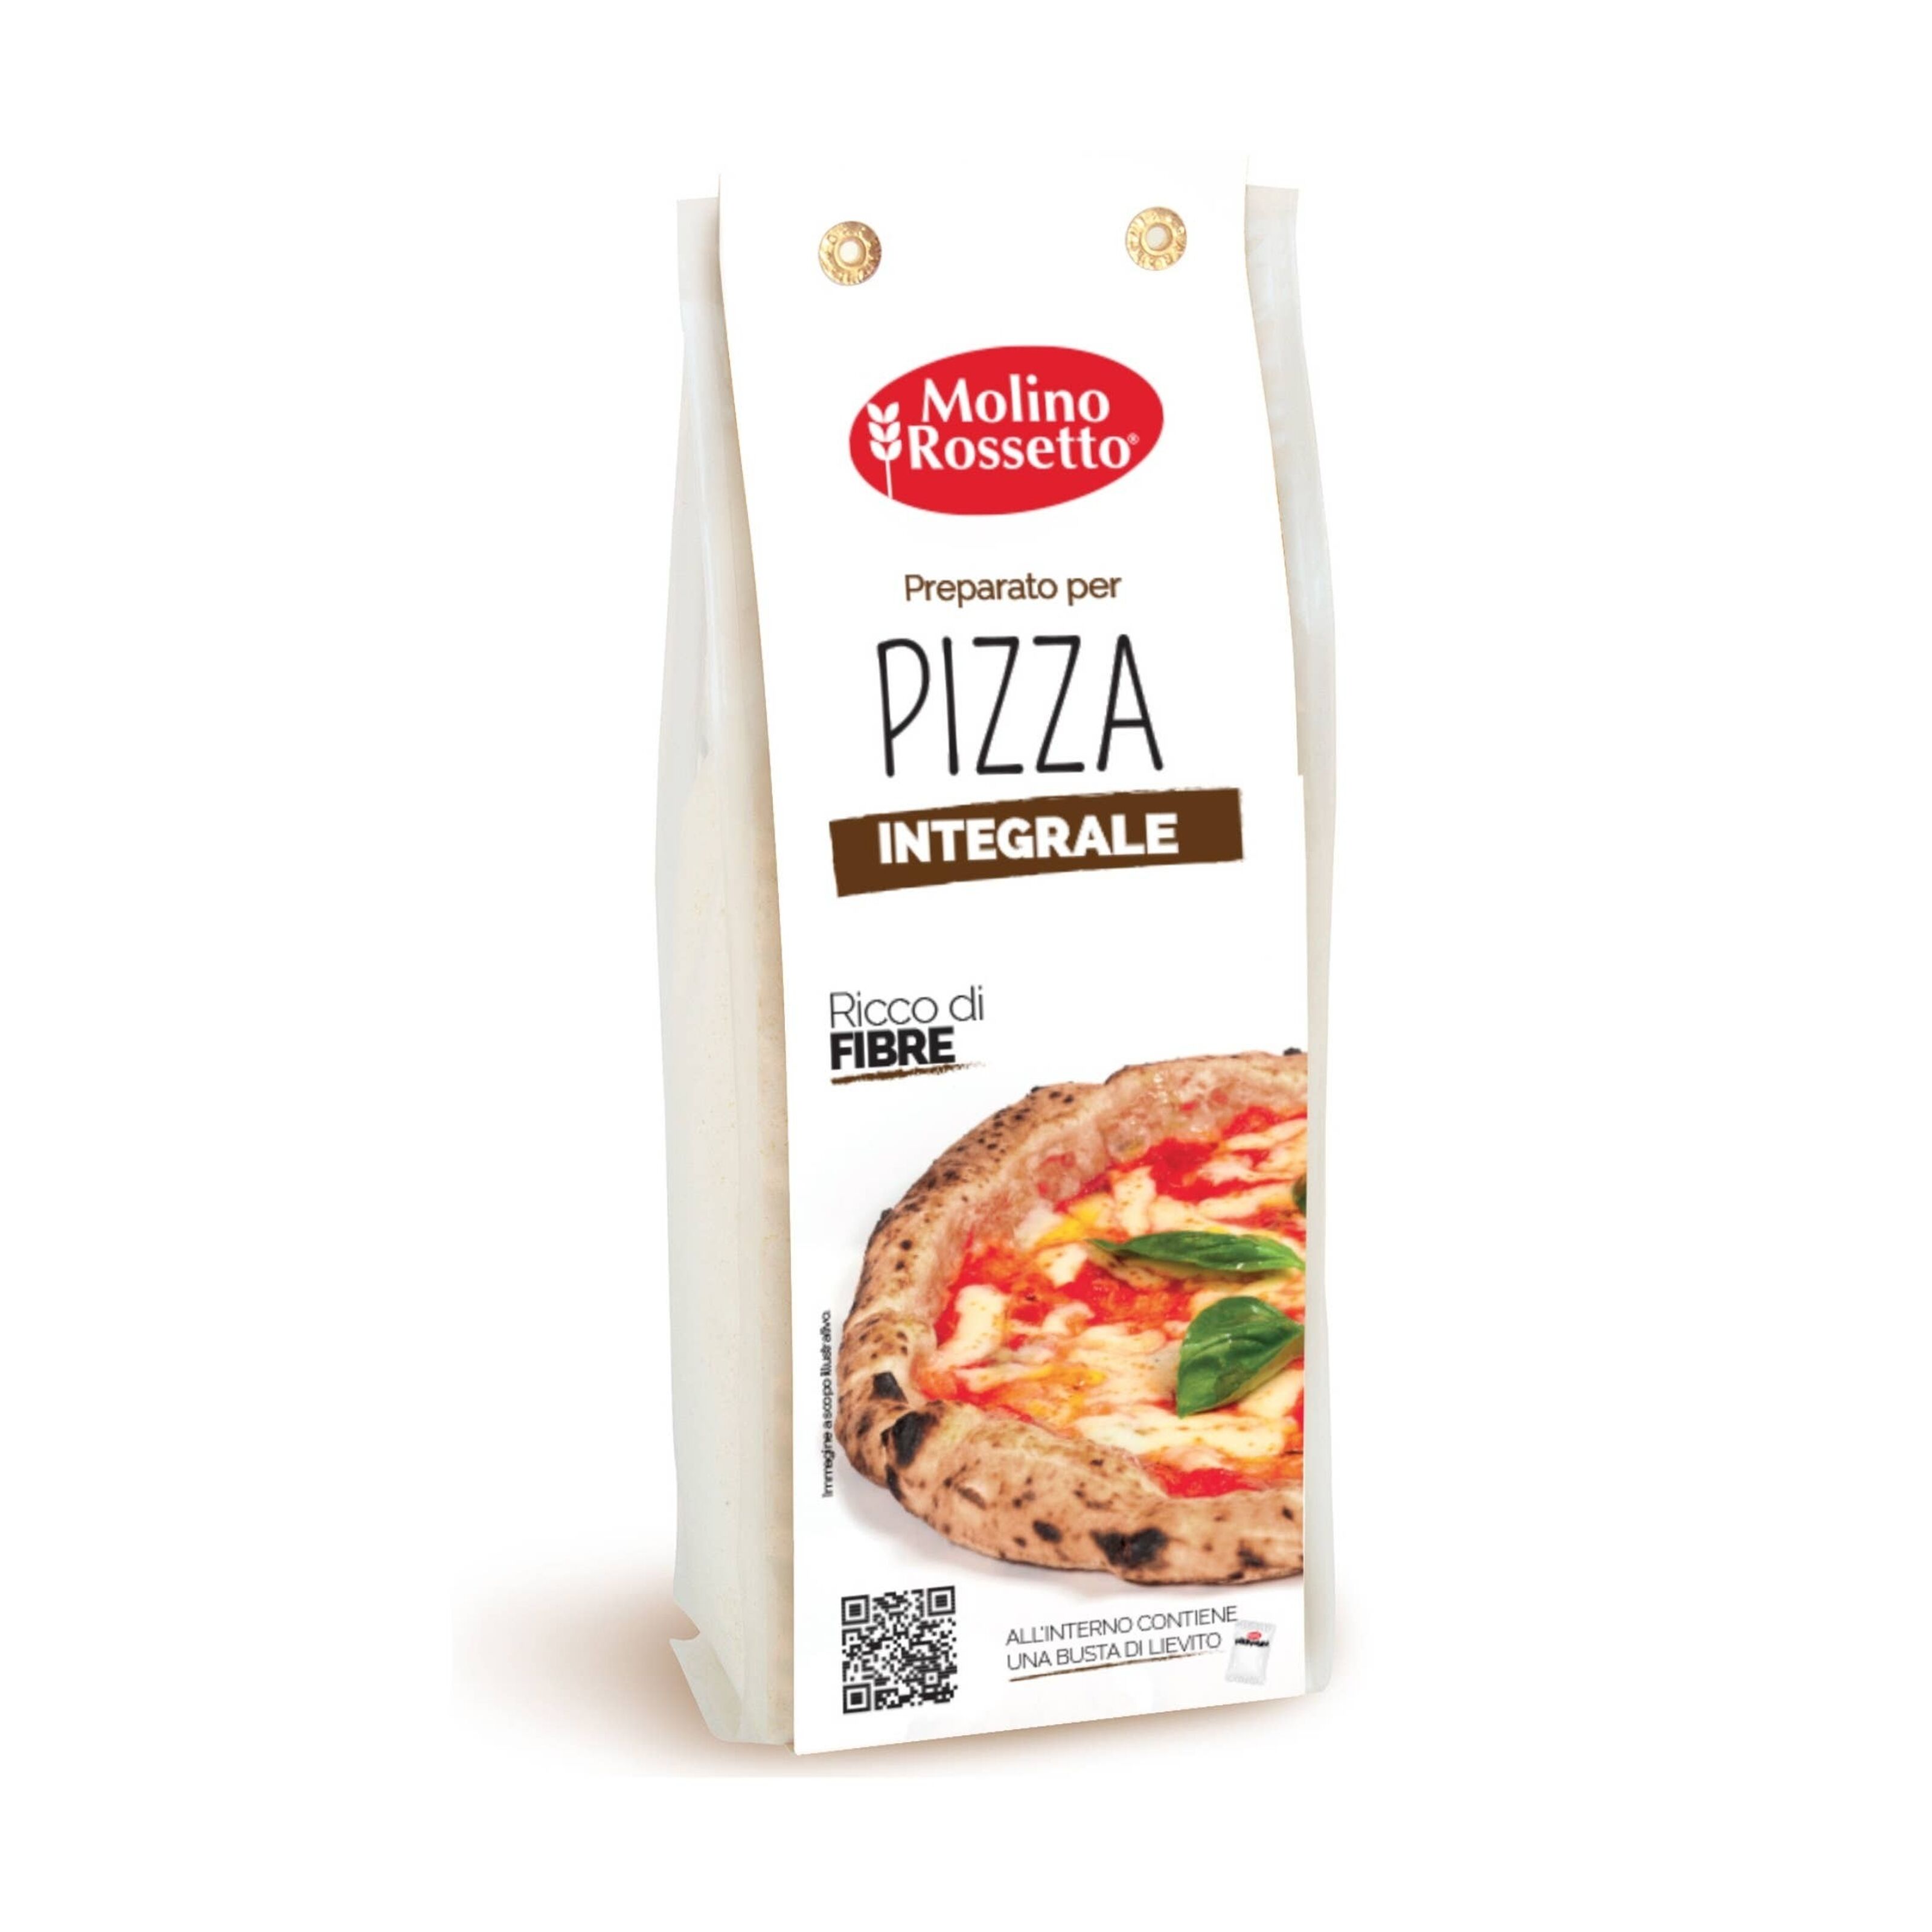 Mélange de farine pour pâte à pizza (500g) acheter à prix réduit